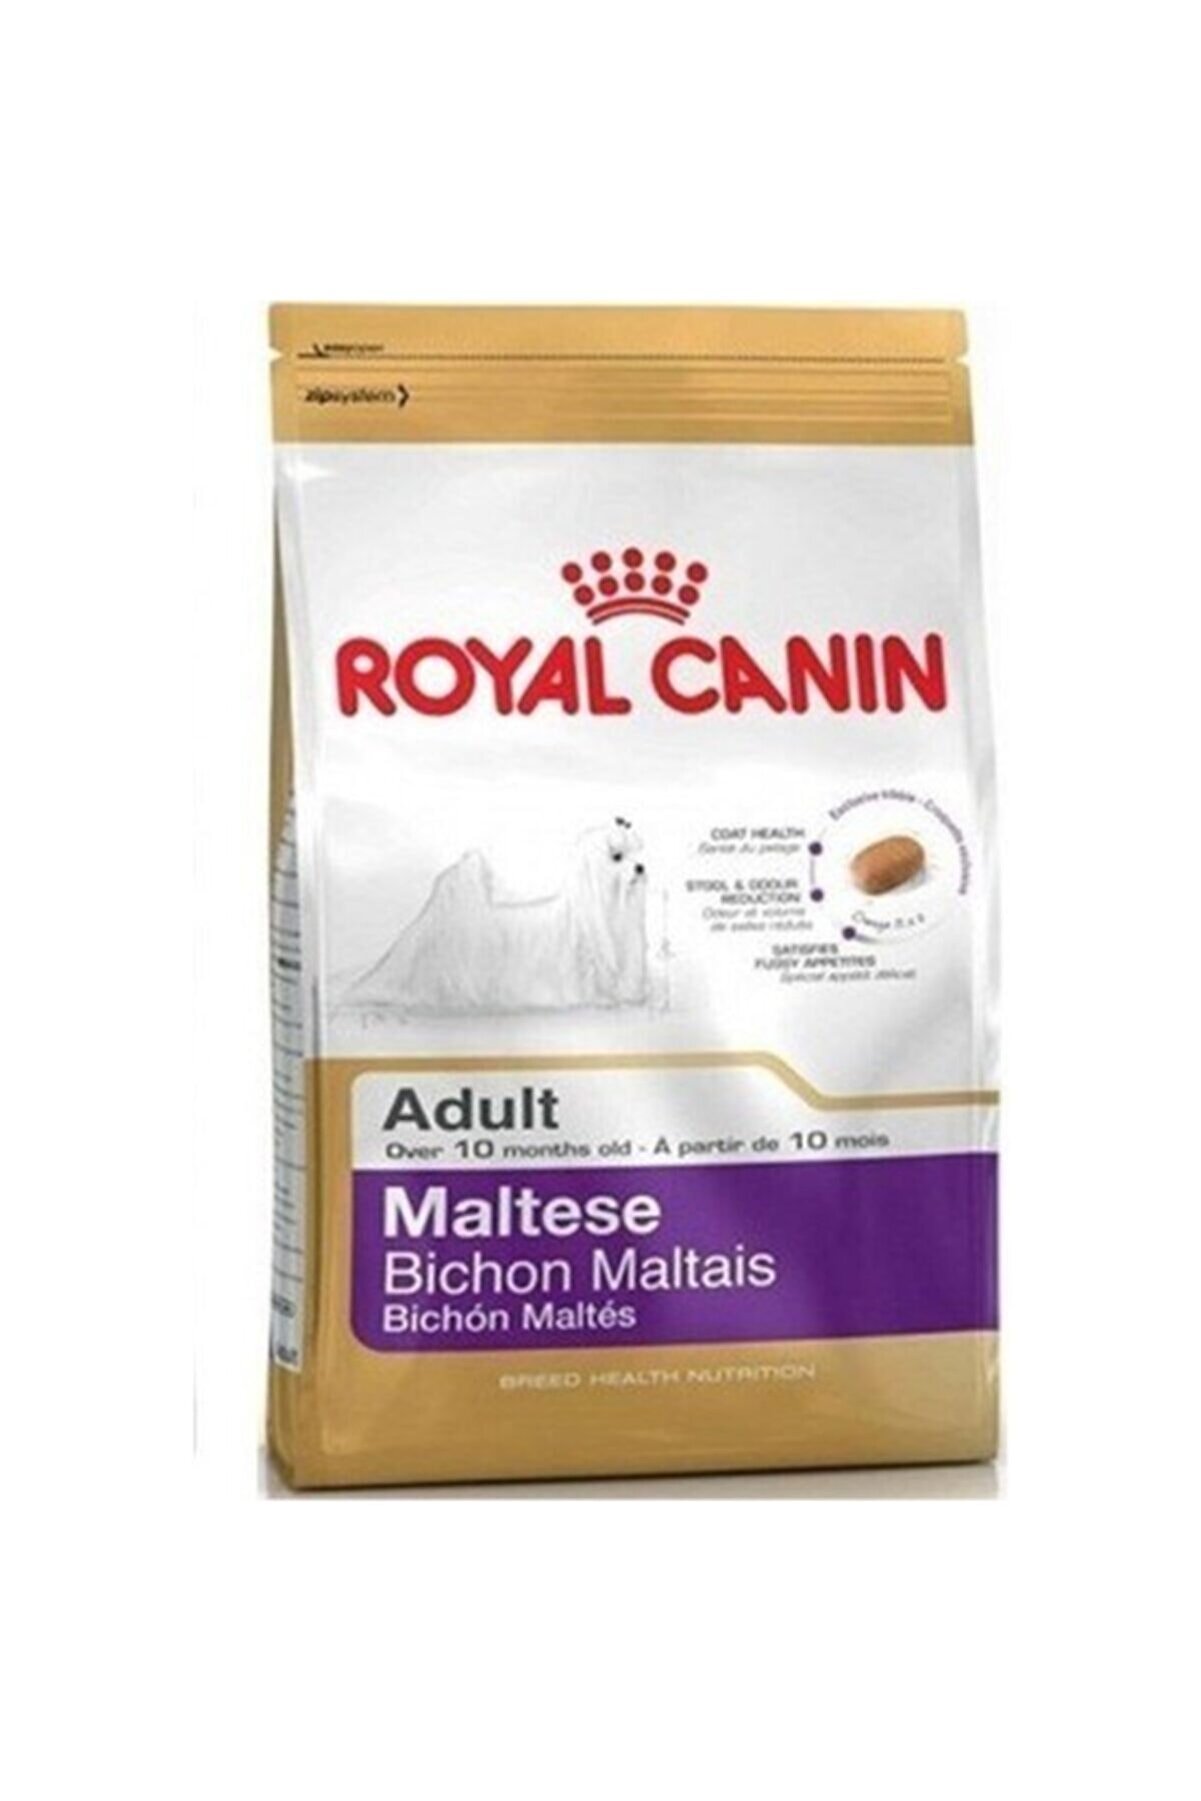 Royal Canin Maltese Bichon Maltais Yetişkin Köpek Maması 1,5 kg